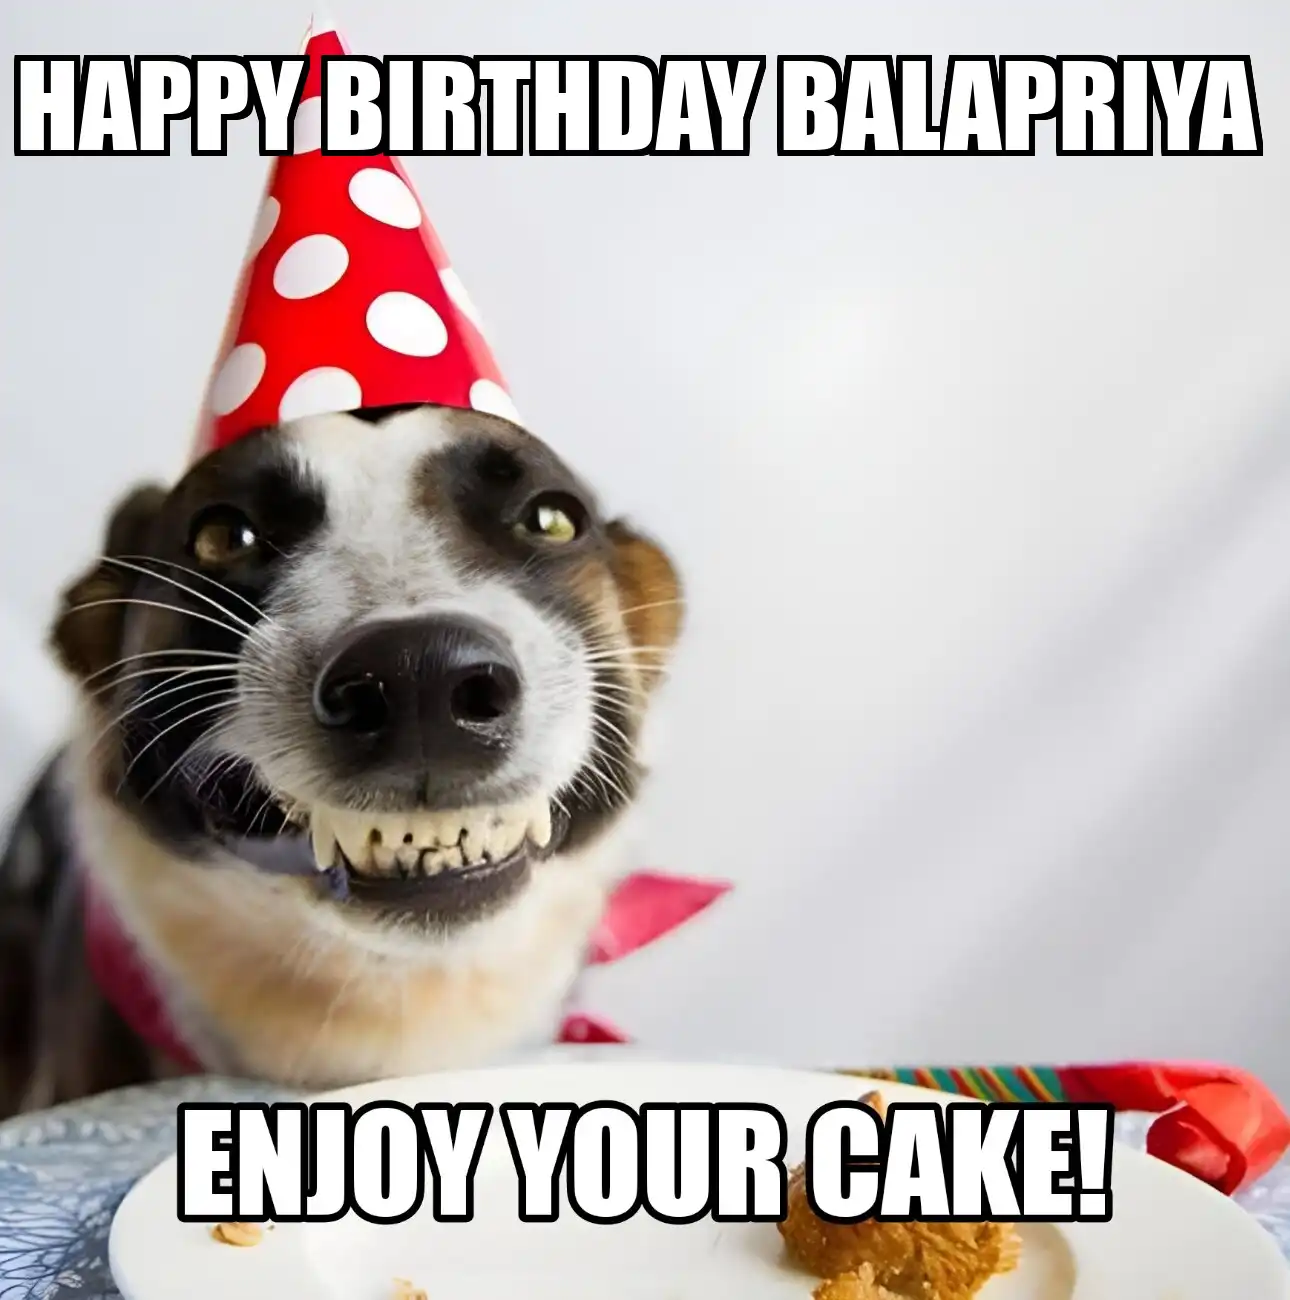 Happy Birthday Balapriya Enjoy Your Cake Dog Meme